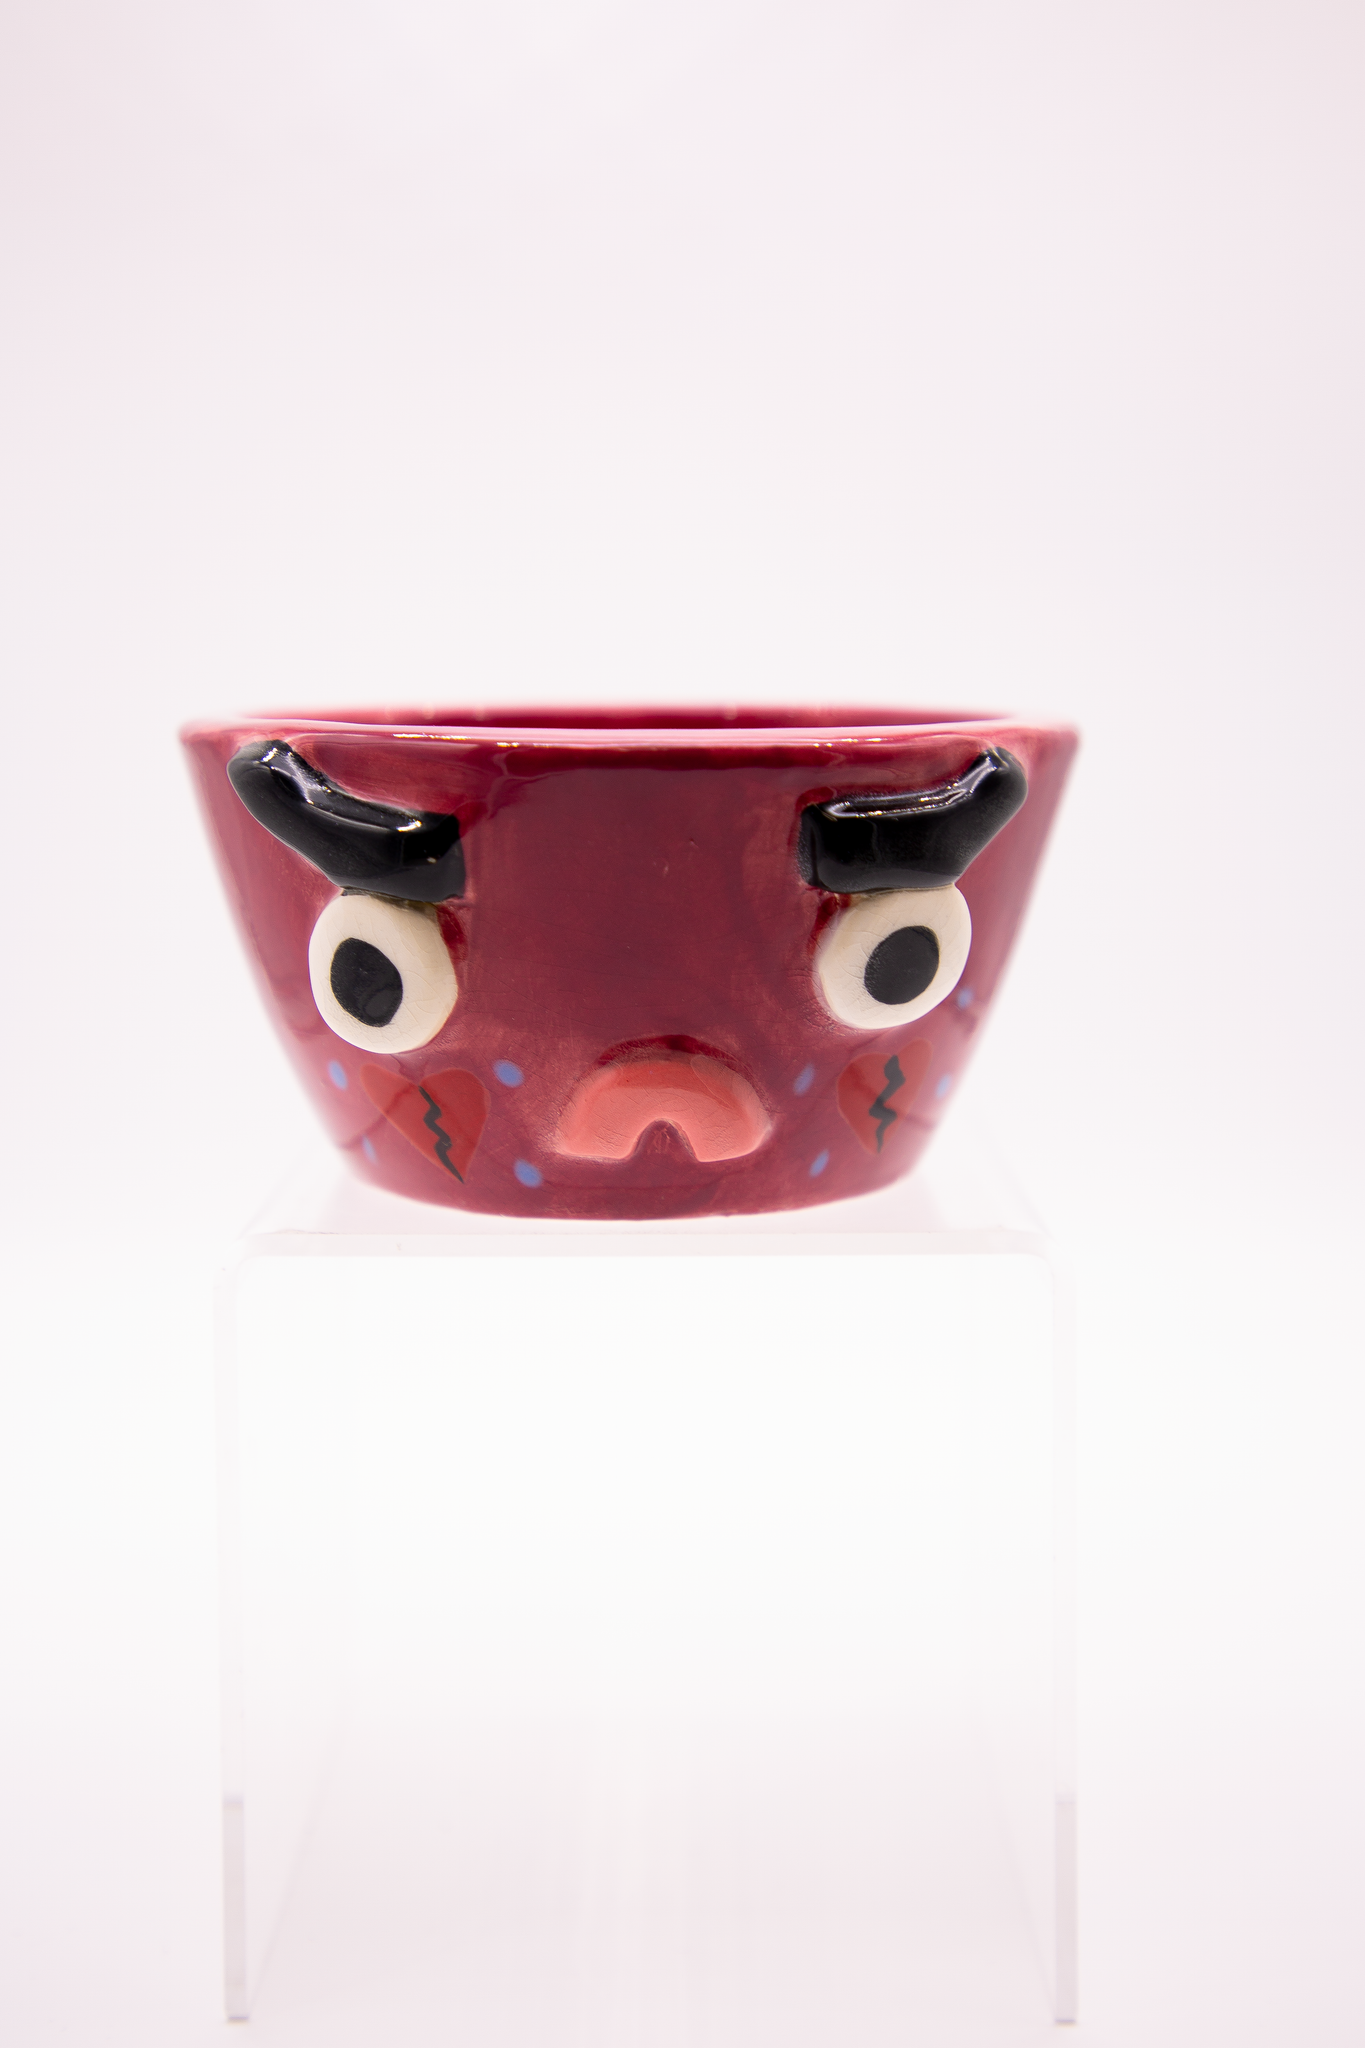 Heartbroken Maroon Ceramic Bowl by Alana Bohni